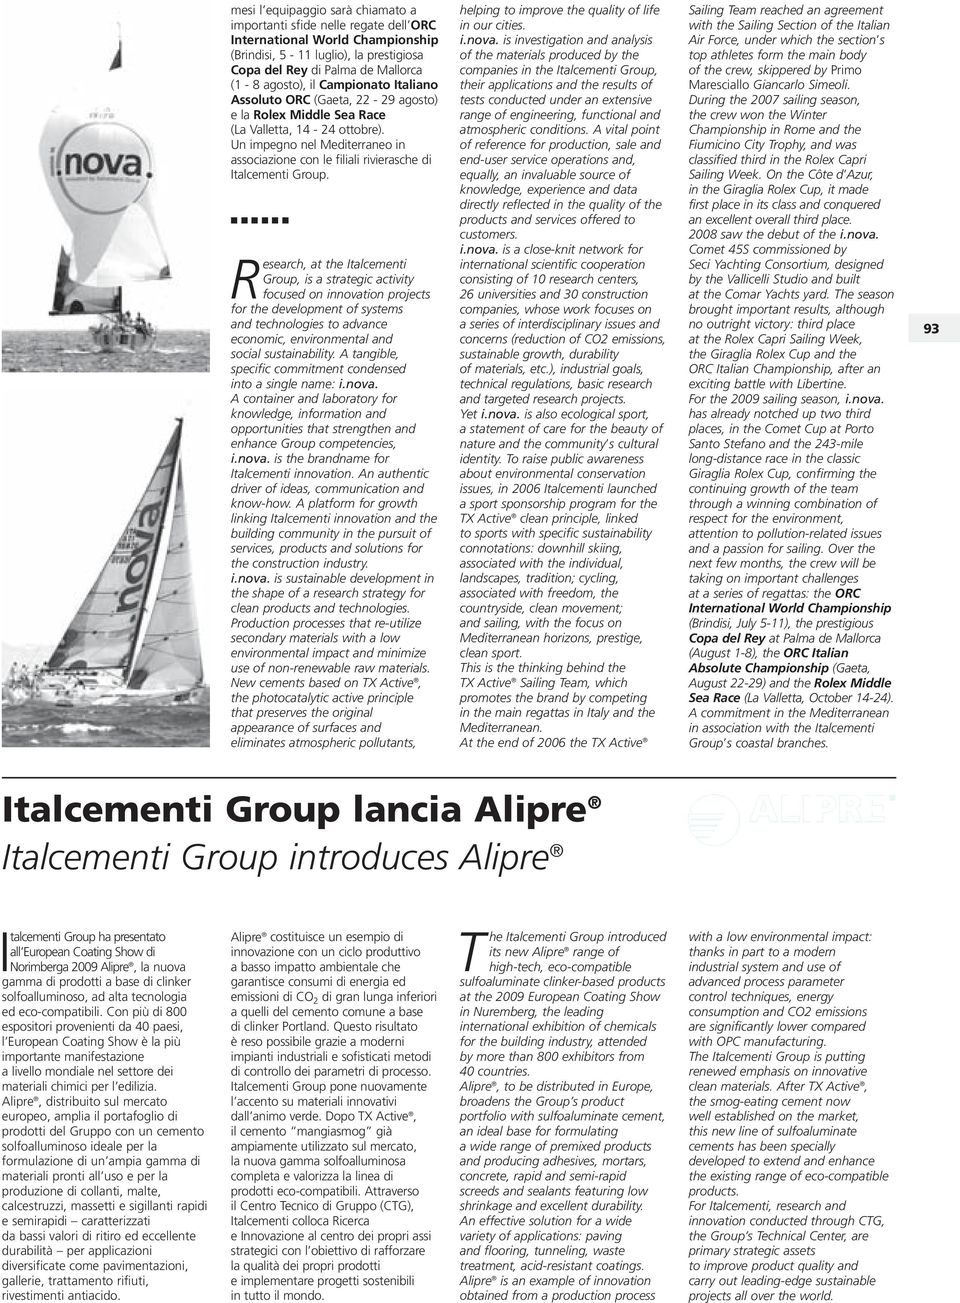 Un impegno nel Mediterraneo in associazione con le filiali rivierasche di Italcementi Group.